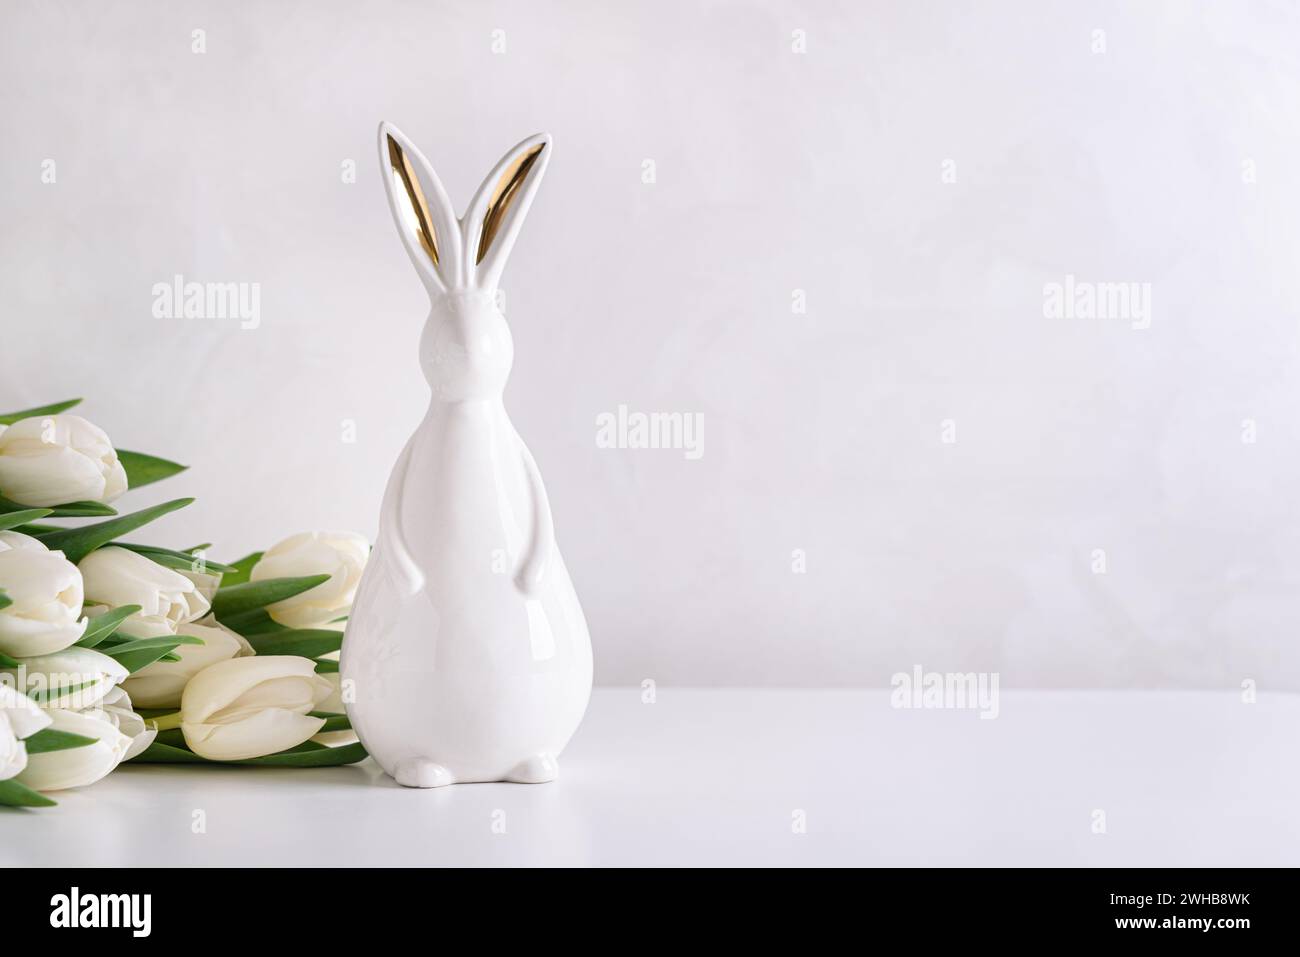 Figurine de lapin de Pâques avec bouquet de tulipes blanches sur fond blanc. Concept de célébration de Pâques. Espace de copie. Vue avant Banque D'Images